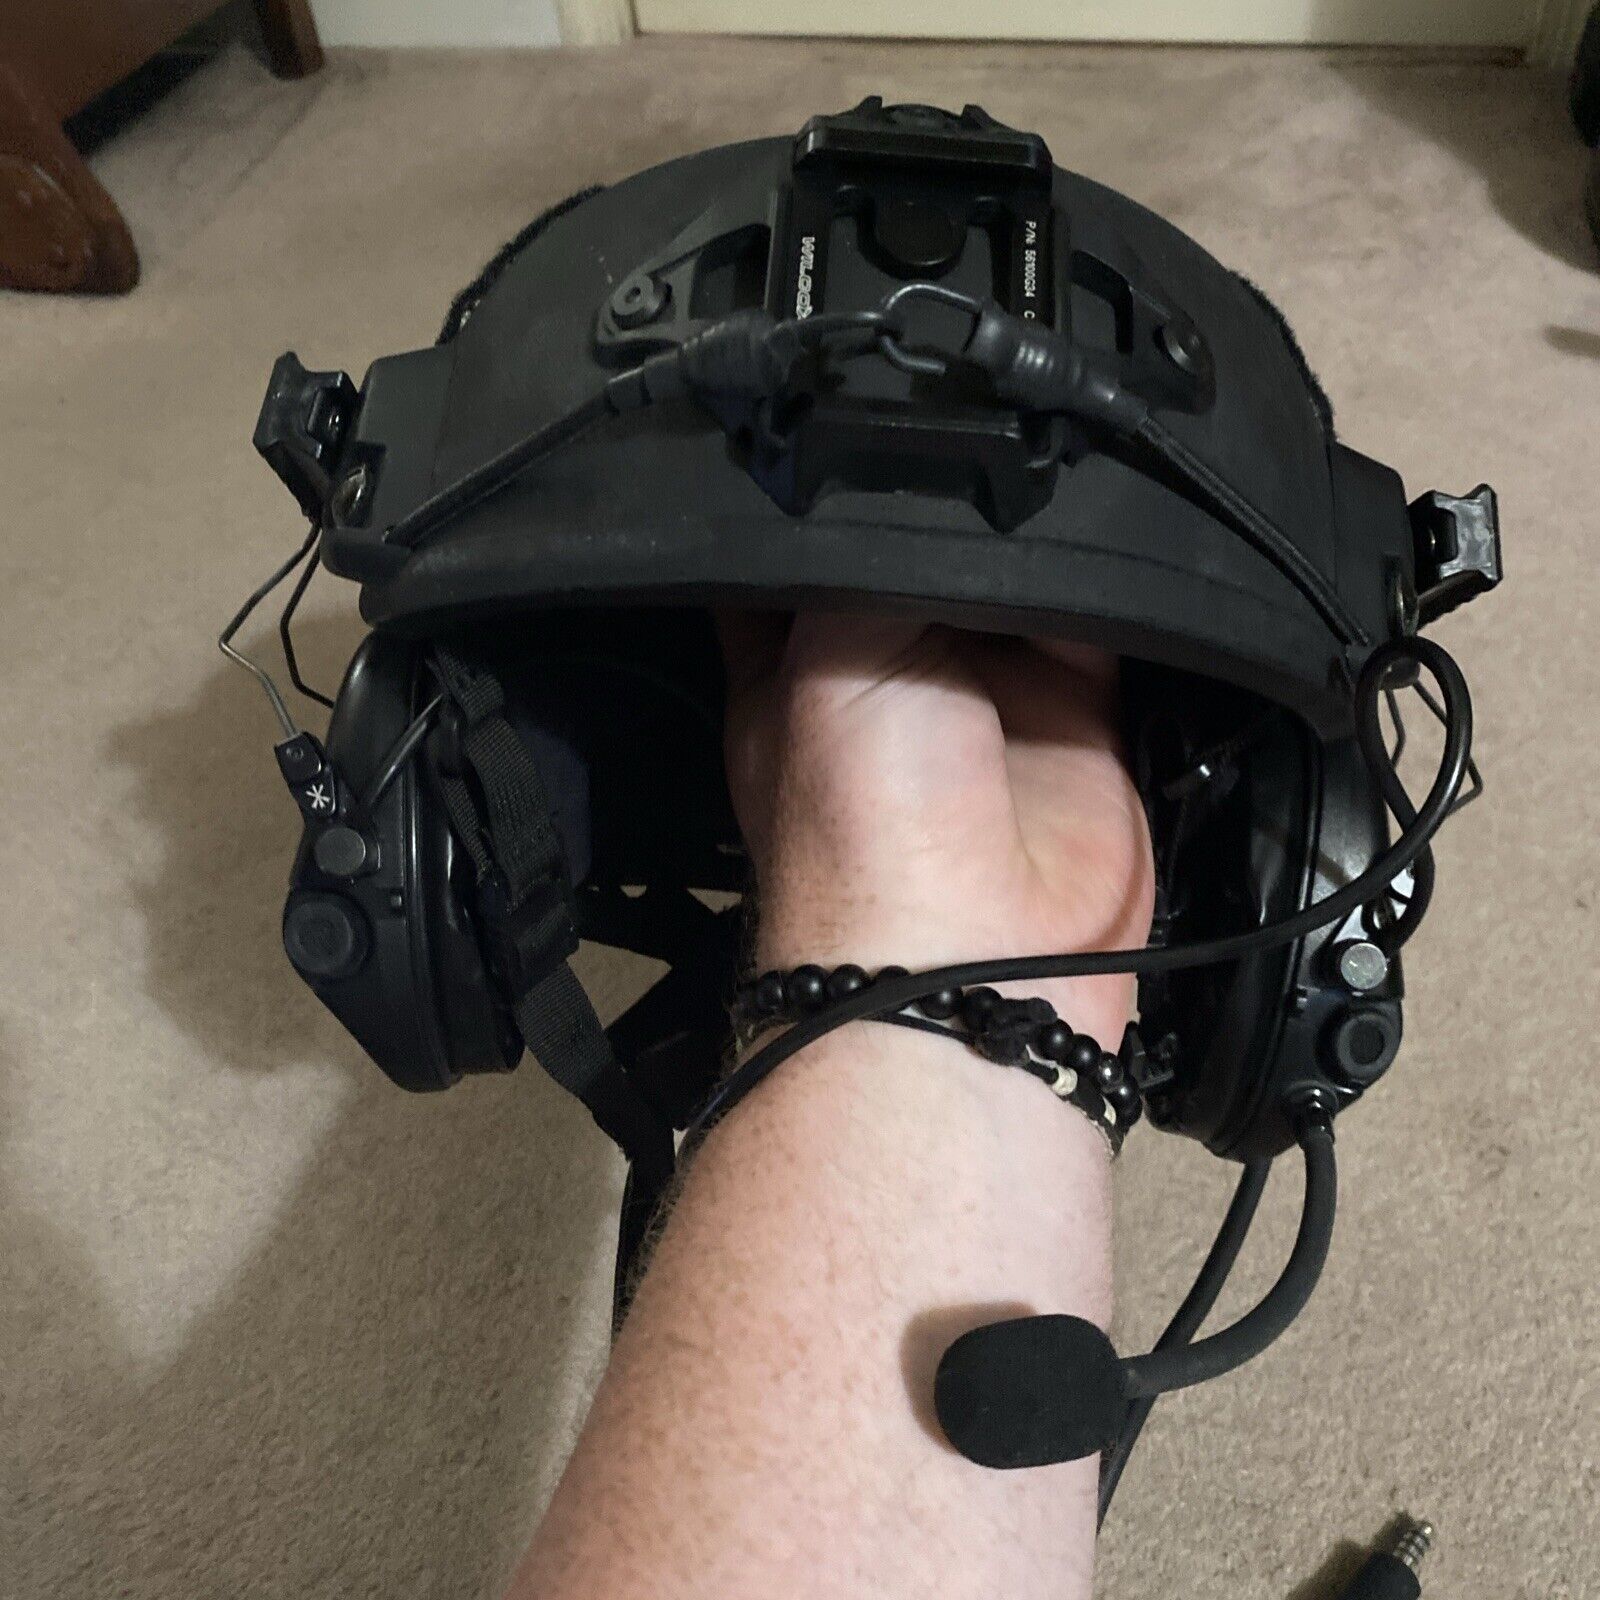 Large - Level IIIA Ballistic Helmet, FAST, Made w/ Kevlar - Lab Tested